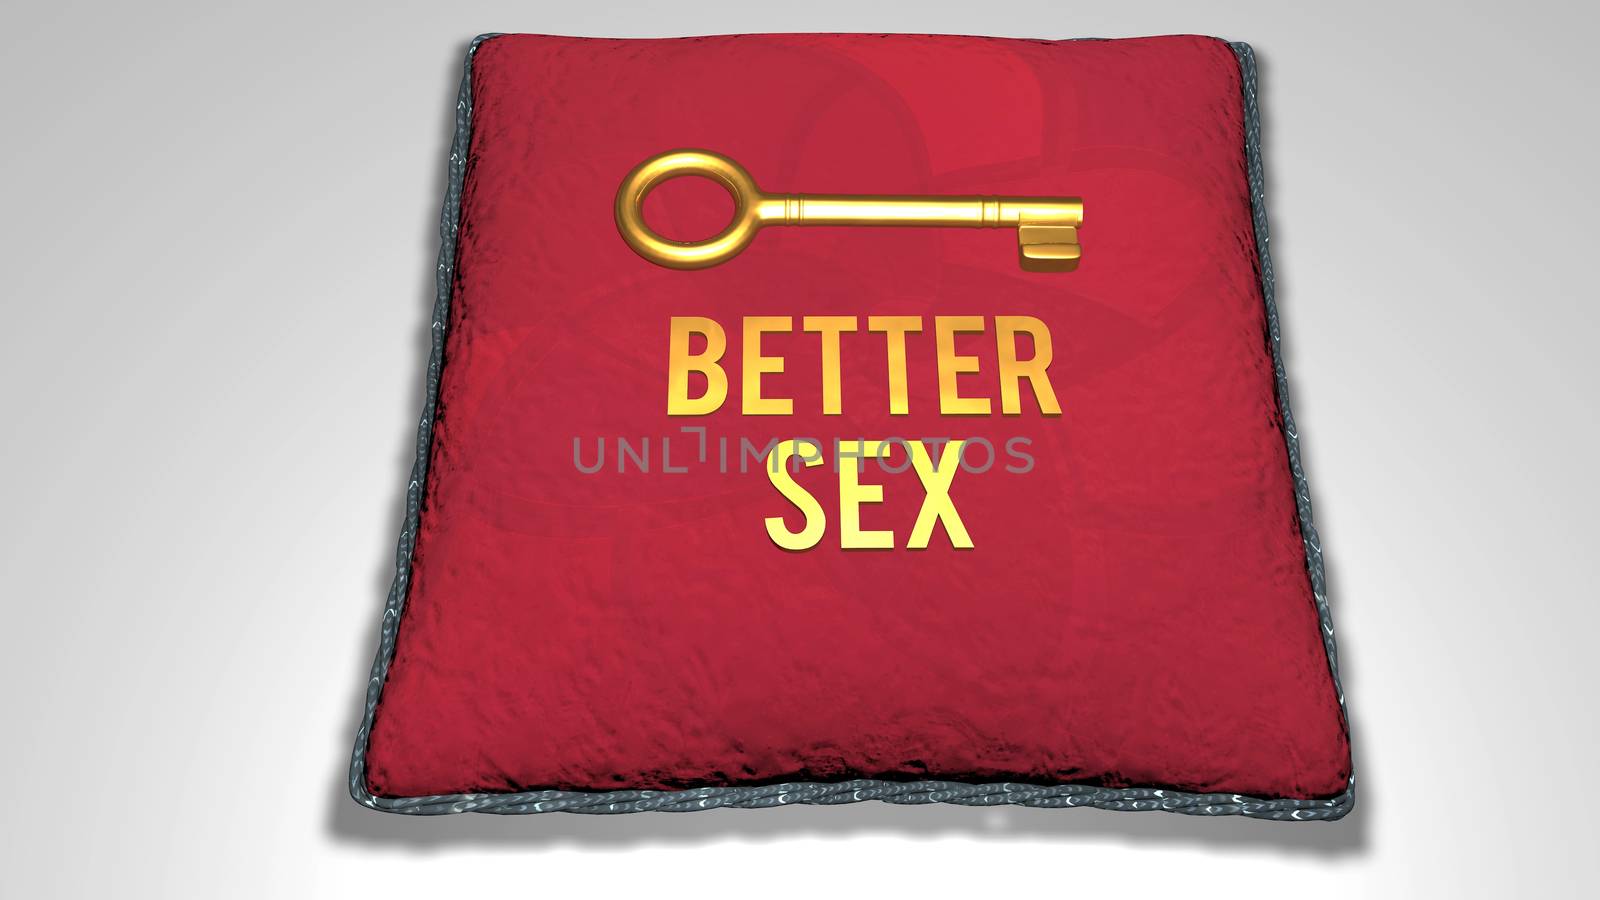 better sex concept 3D render illustration